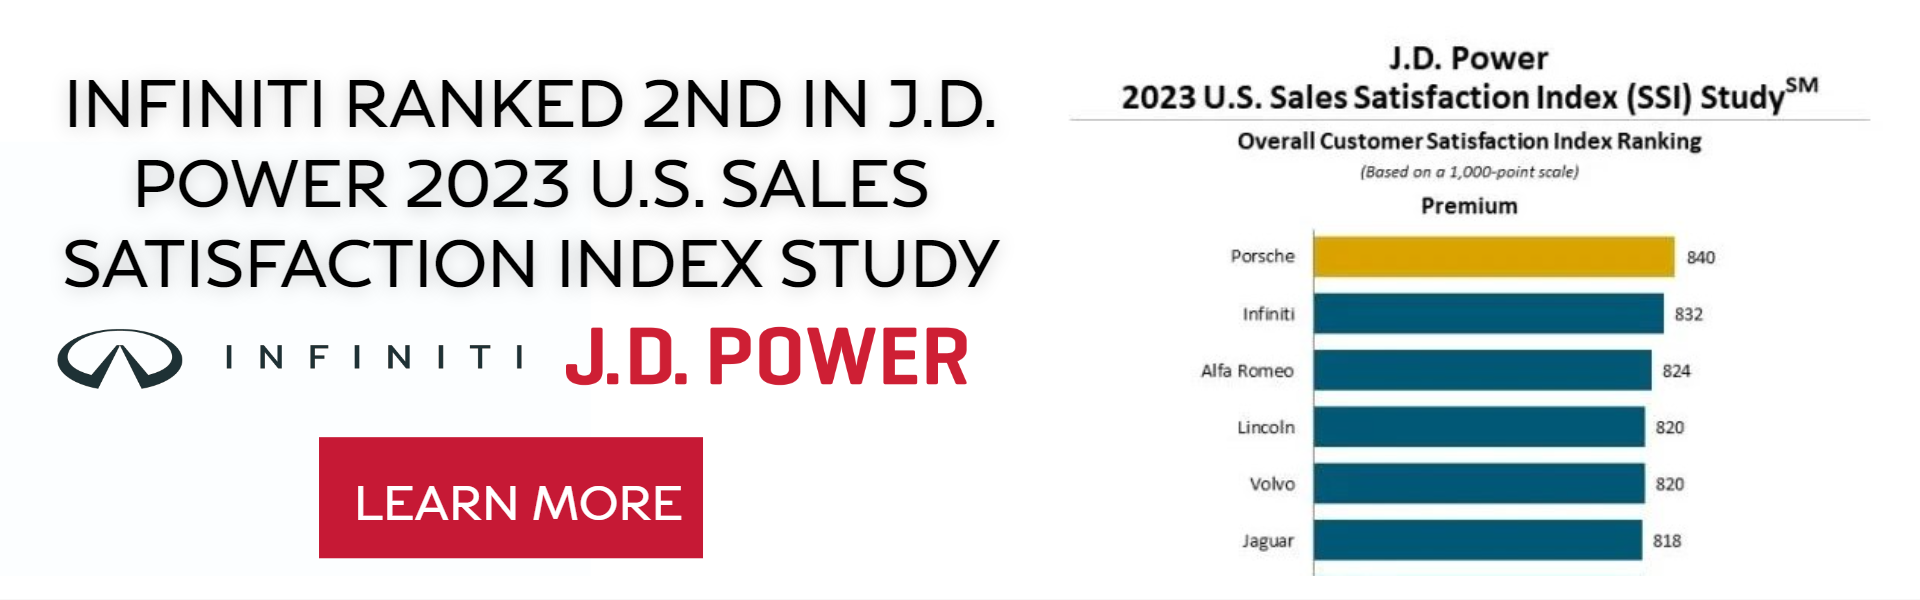 J.D. Power SSI Study 